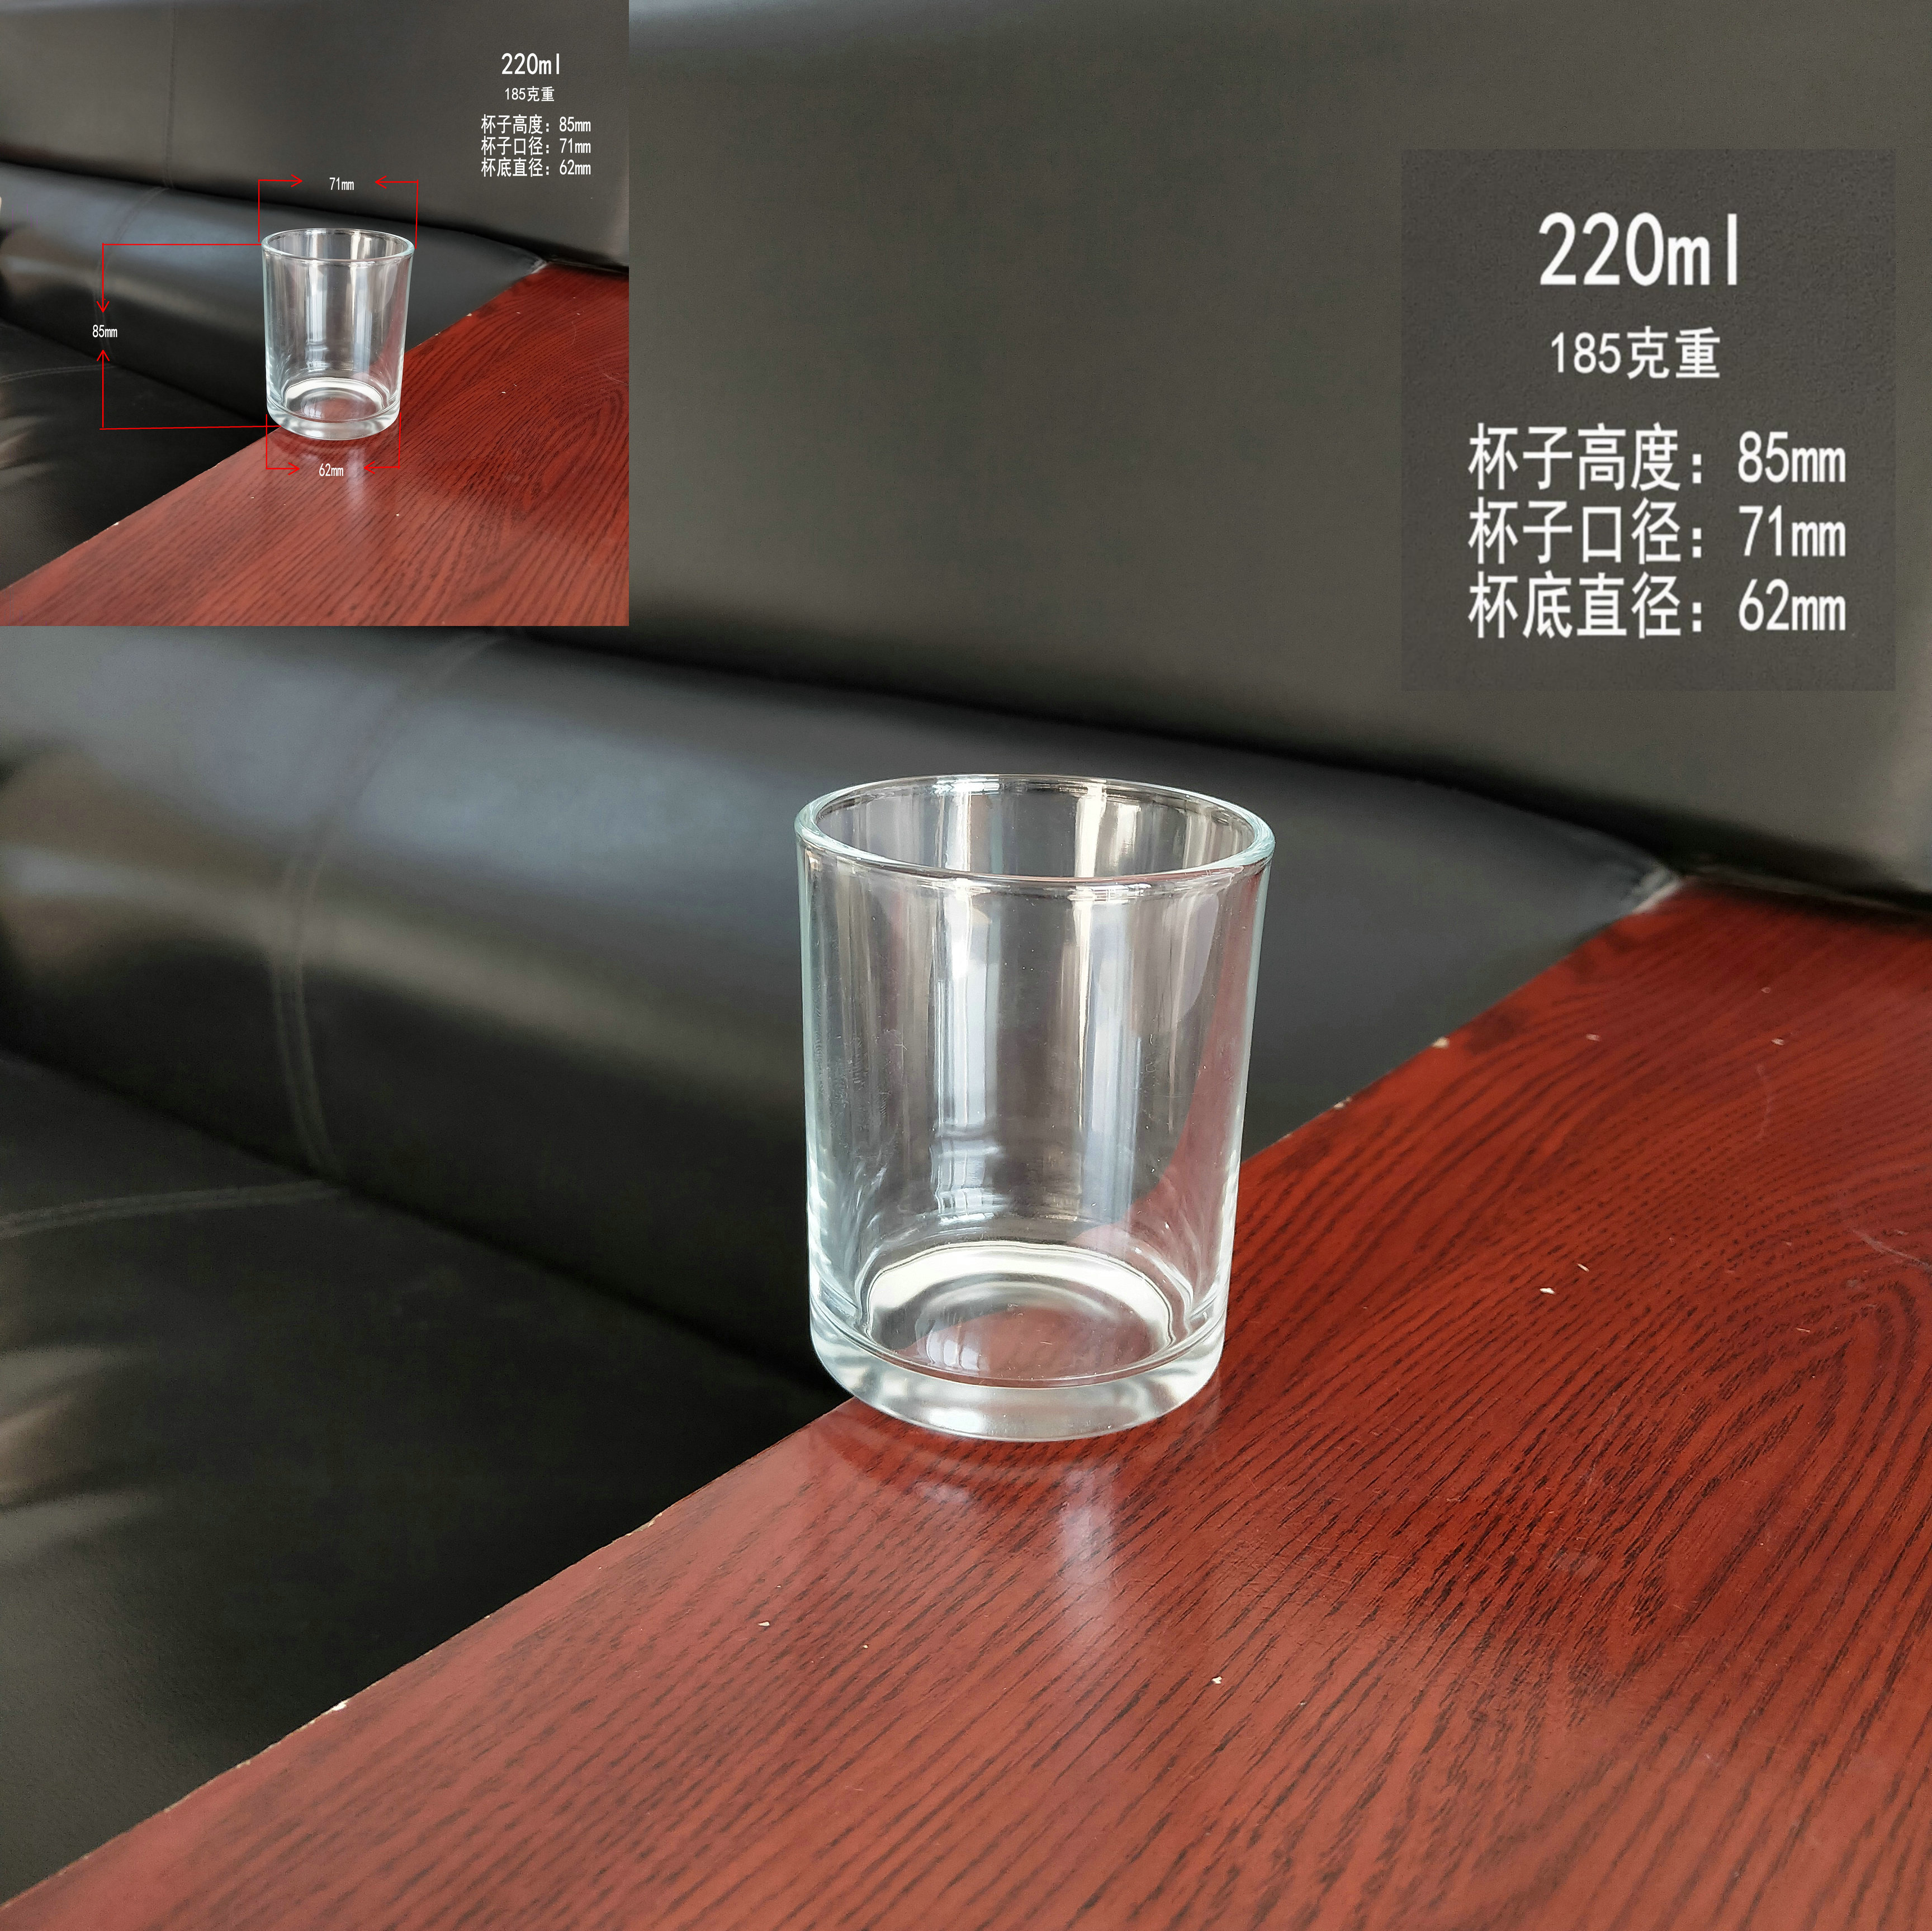 礼品杯 玻璃制品生产厂家批发定制各种玻璃瓶玻璃包装蜡台杯 广告杯 啤酒杯 玻璃杯 隆安玻璃杯 水杯5